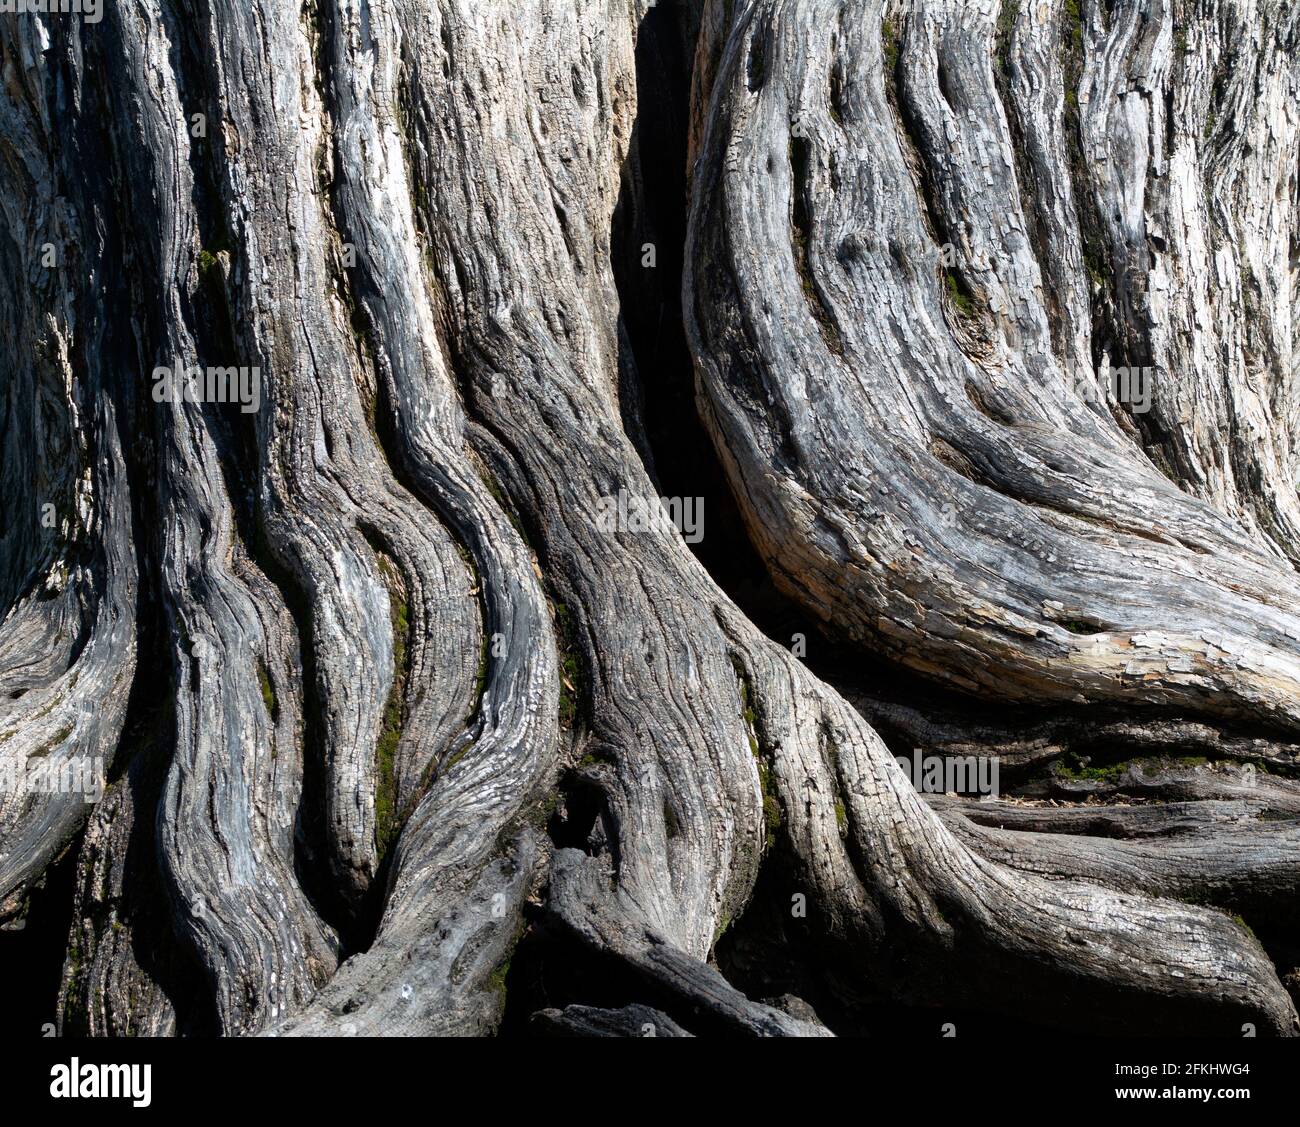 Das verwitterte Holz eines Baumstammes zeigt die Schönheit des alternden, rindenfreien Außenholzes, das durch die Elemente und die Zeit grau wird. Stockfoto